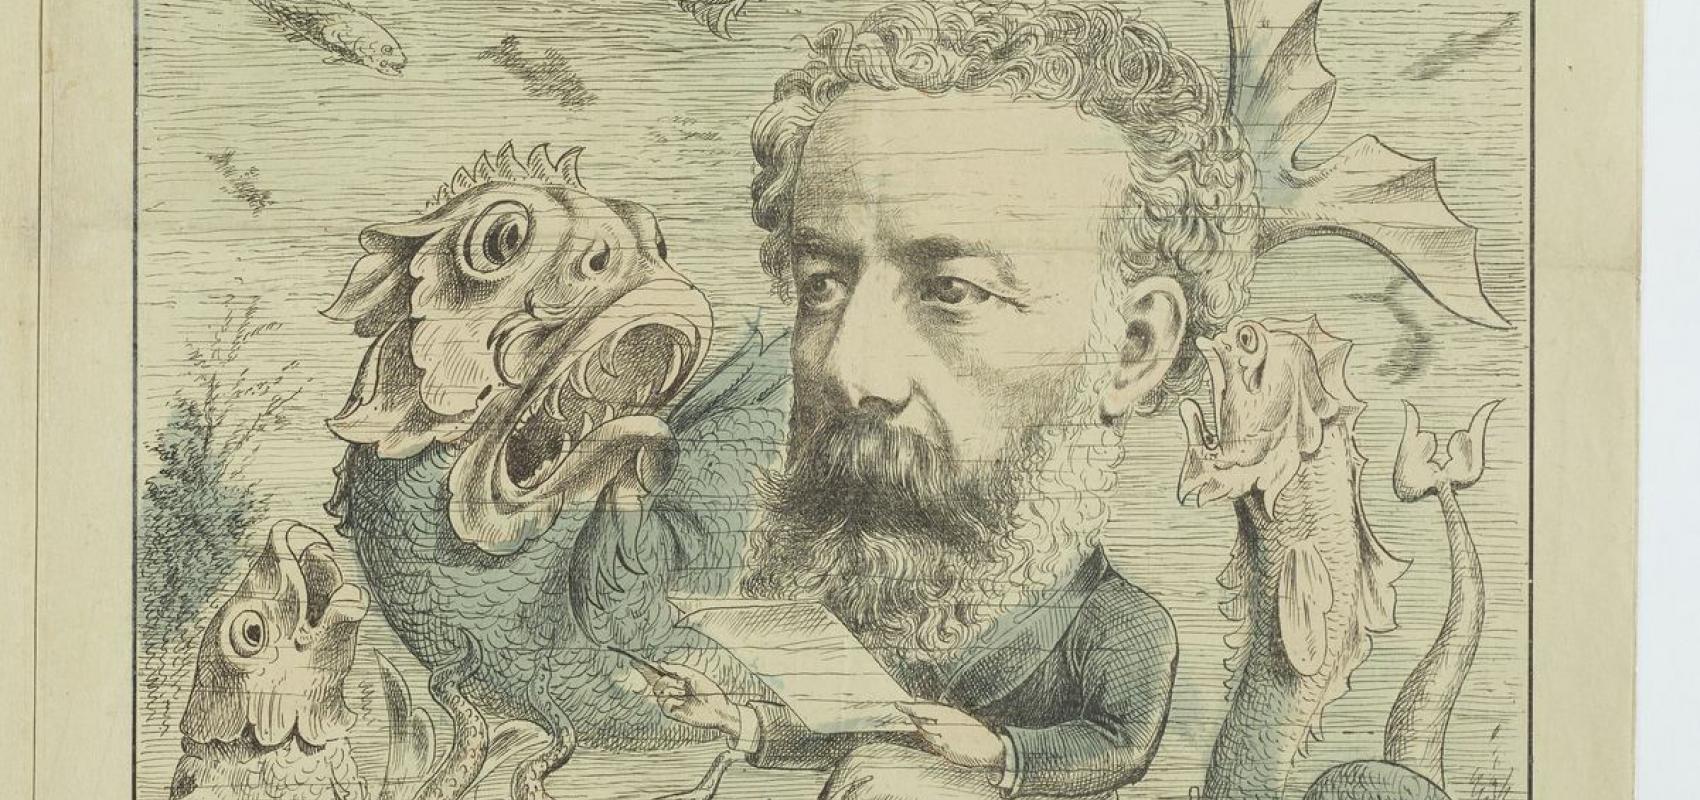 M. Jules Verne allant recueillir aux bonnes sources des renseignements authentiques sur le monde marin, dans « L’Algérie comique et pittoresque », n° 44, 15 juin 1884 -  - BnF, département Droit, économie et politique